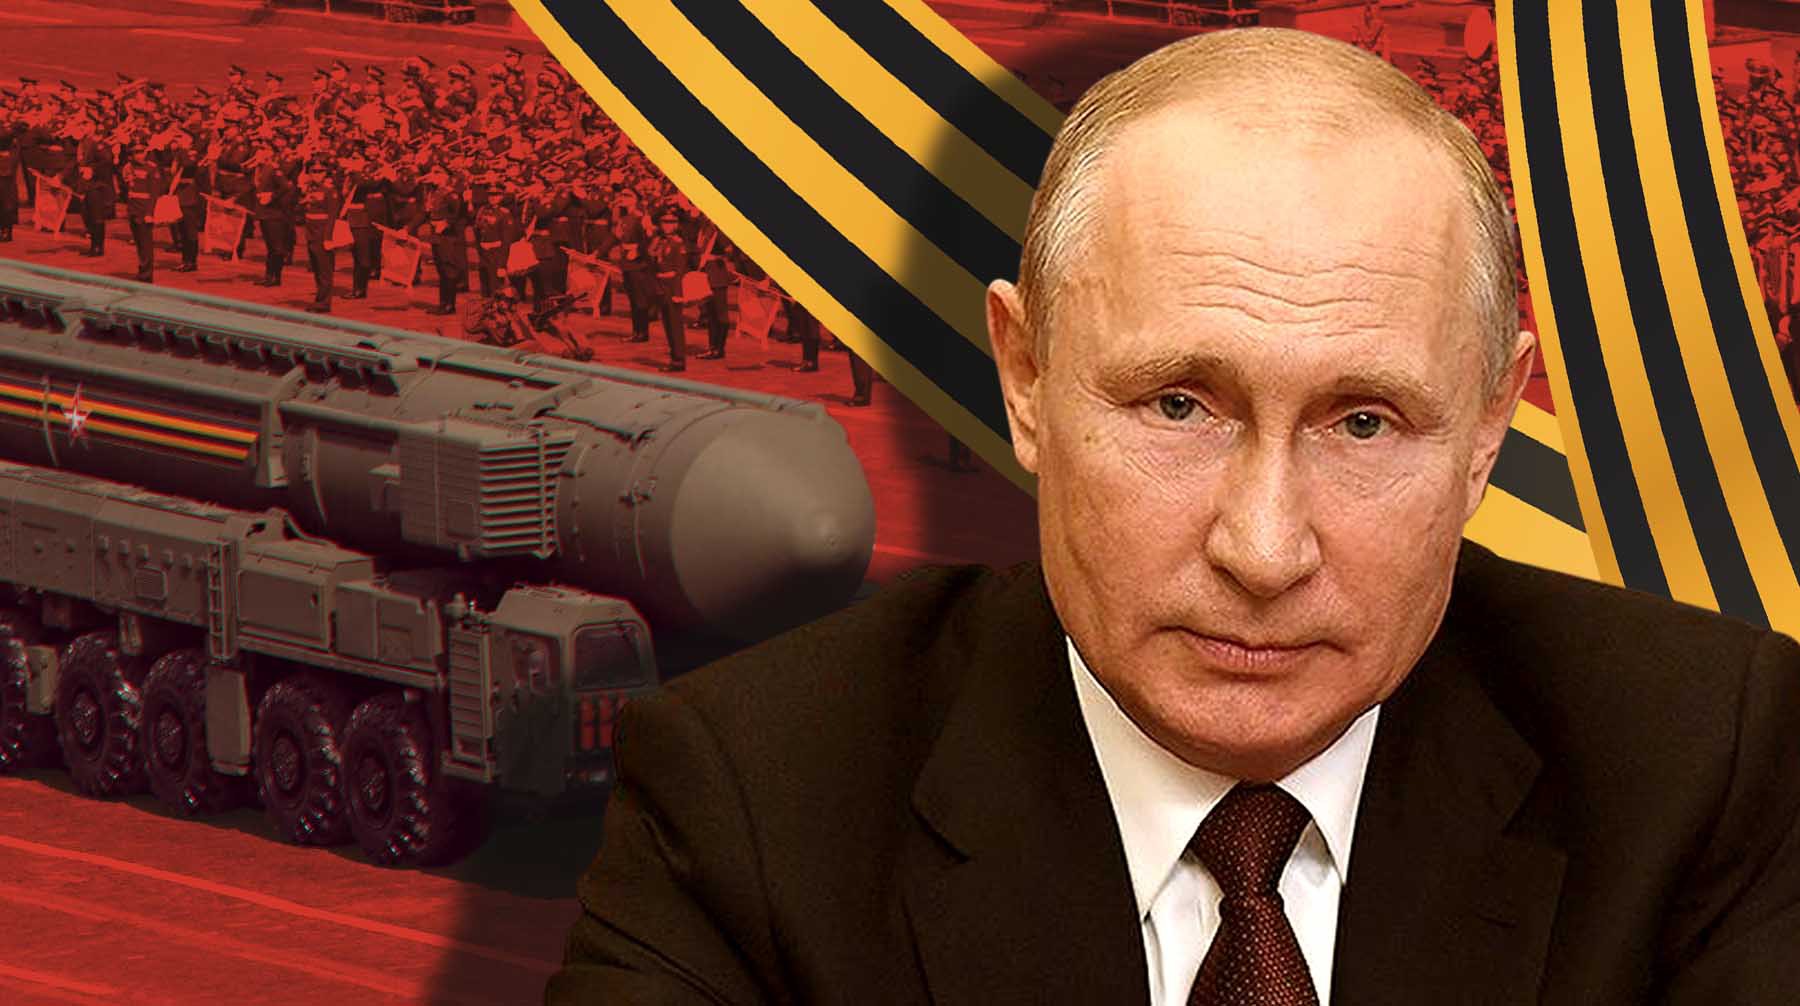 Dailystorm - Путин поздравил россиян с Днем Победы и заявил, что военные сейчас защищают страну, как и в годы ВОВ